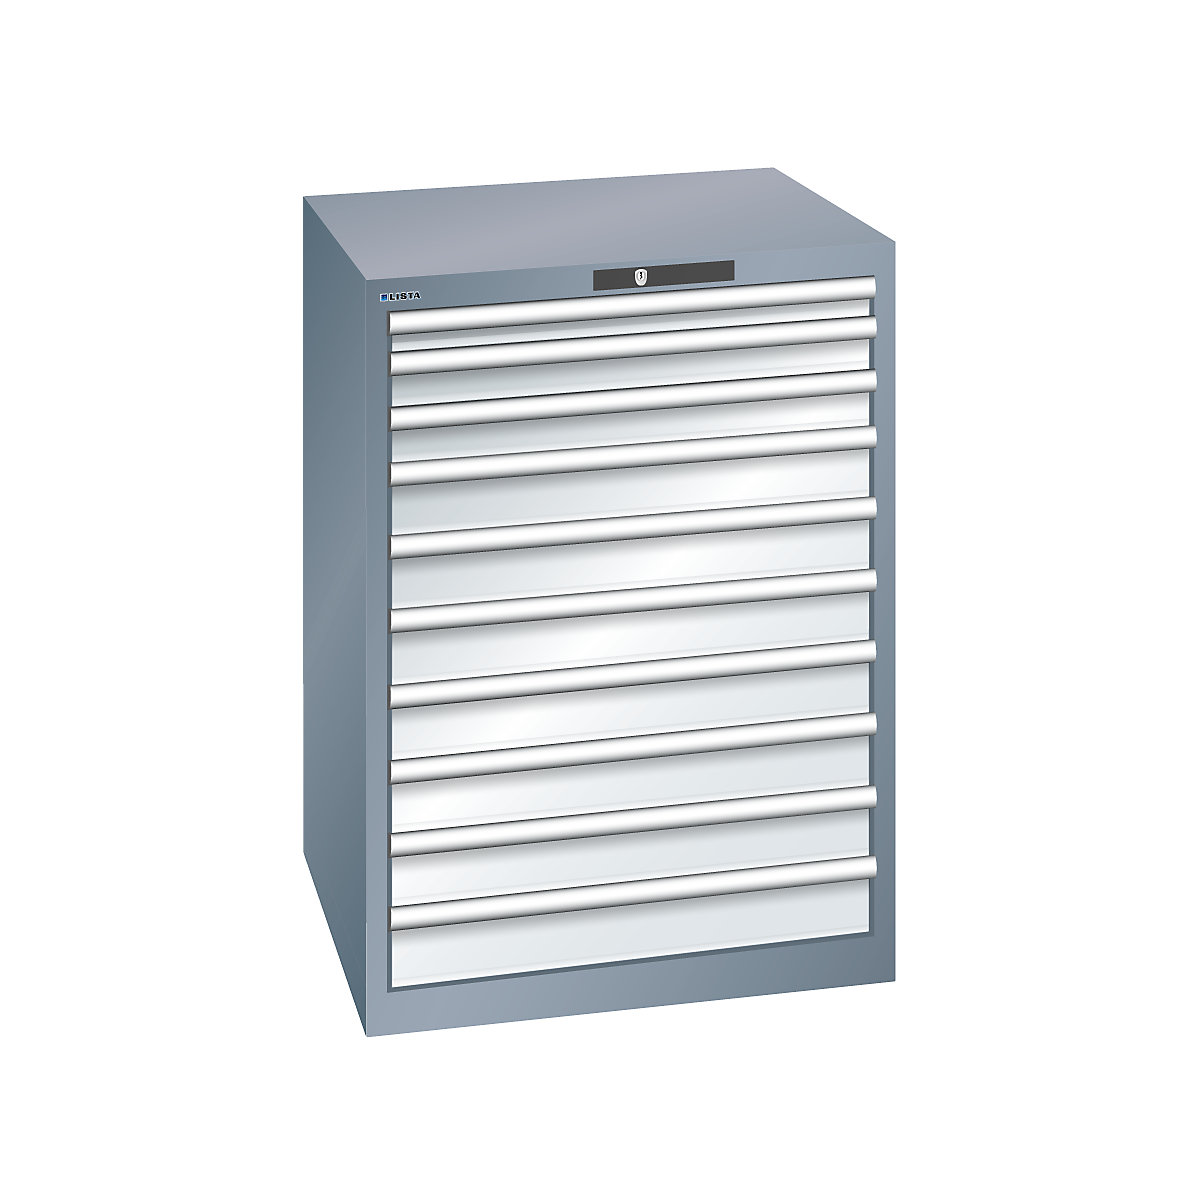 LISTA – Armoire à tiroirs en tôle d'acier, h x l 1000 x 717 mm, 10 tiroirs, gris métallisé / gris clair